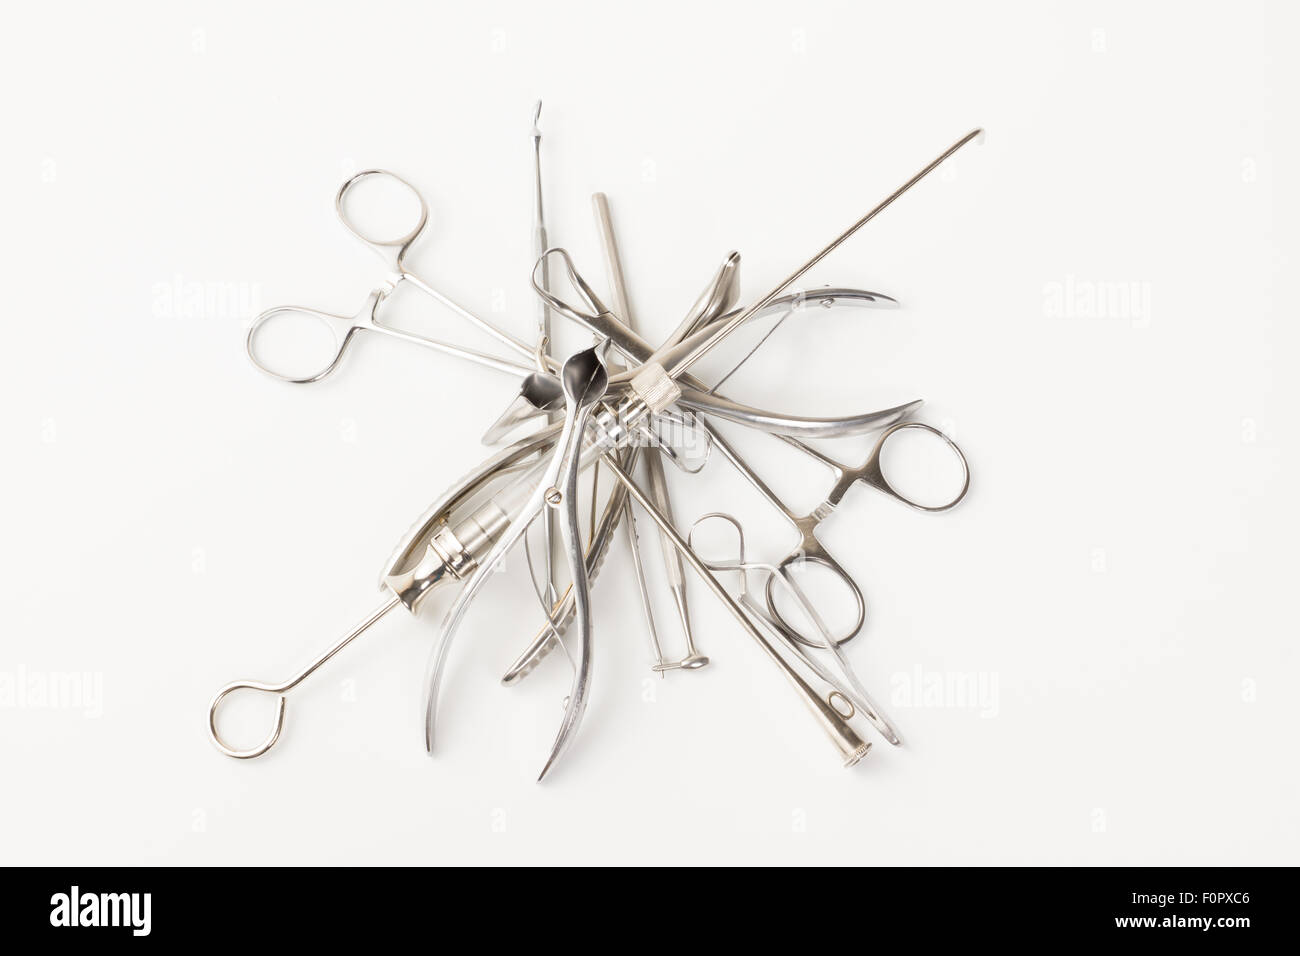 einige verchromt medizinische chirurgische Instrumente liegen auf einem weißen Hintergrund Stockfoto